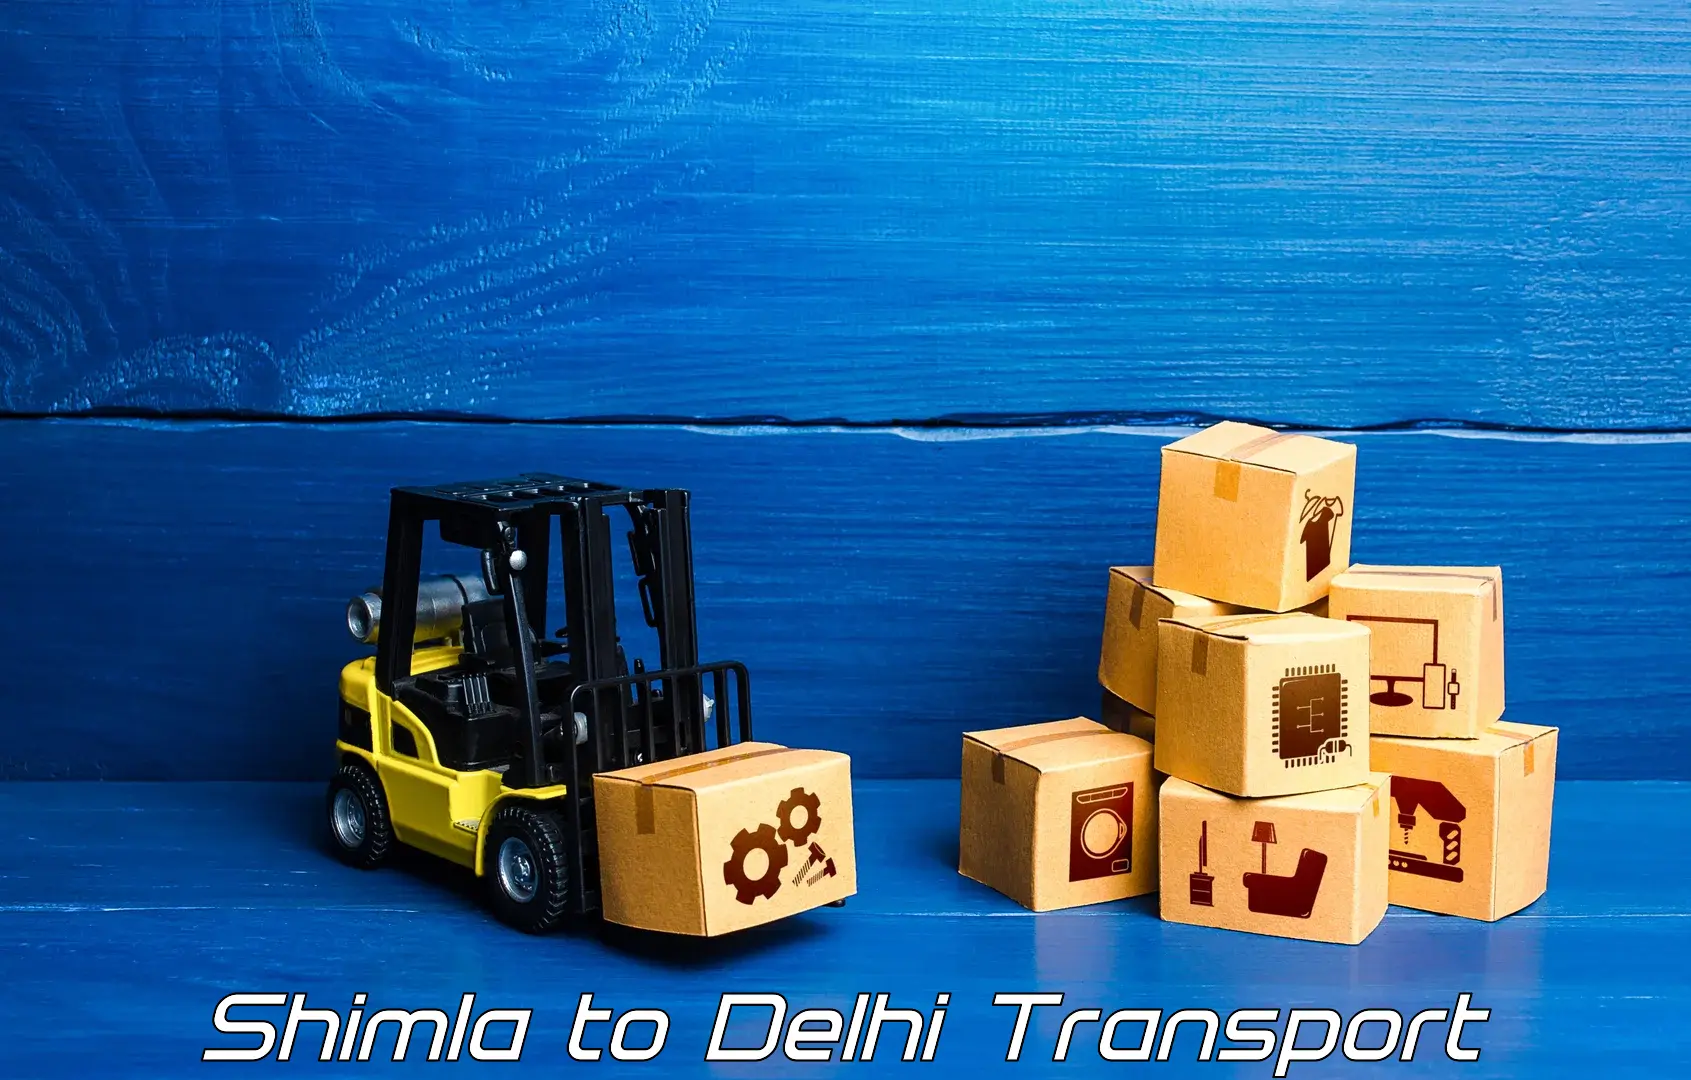 Parcel transport services Shimla to Delhi